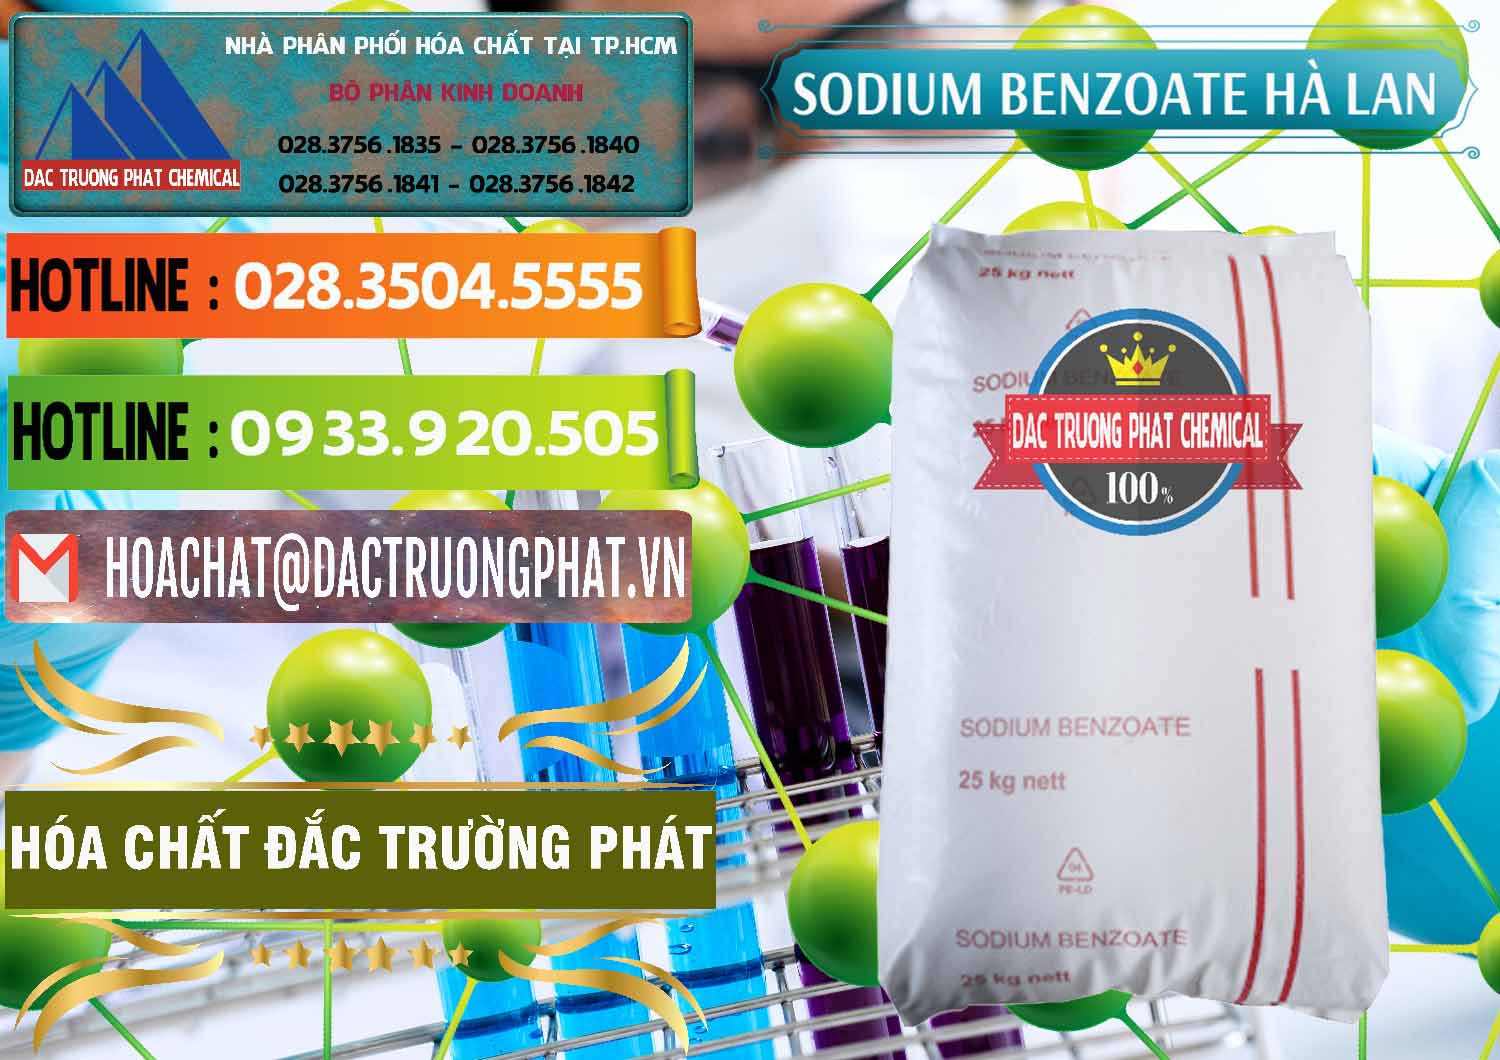 Nơi bán và cung cấp Sodium Benzoate - Mốc Bột Chữ Cam Hà Lan Netherlands - 0360 - Chuyên cung cấp & bán hóa chất tại TP.HCM - cungcaphoachat.com.vn